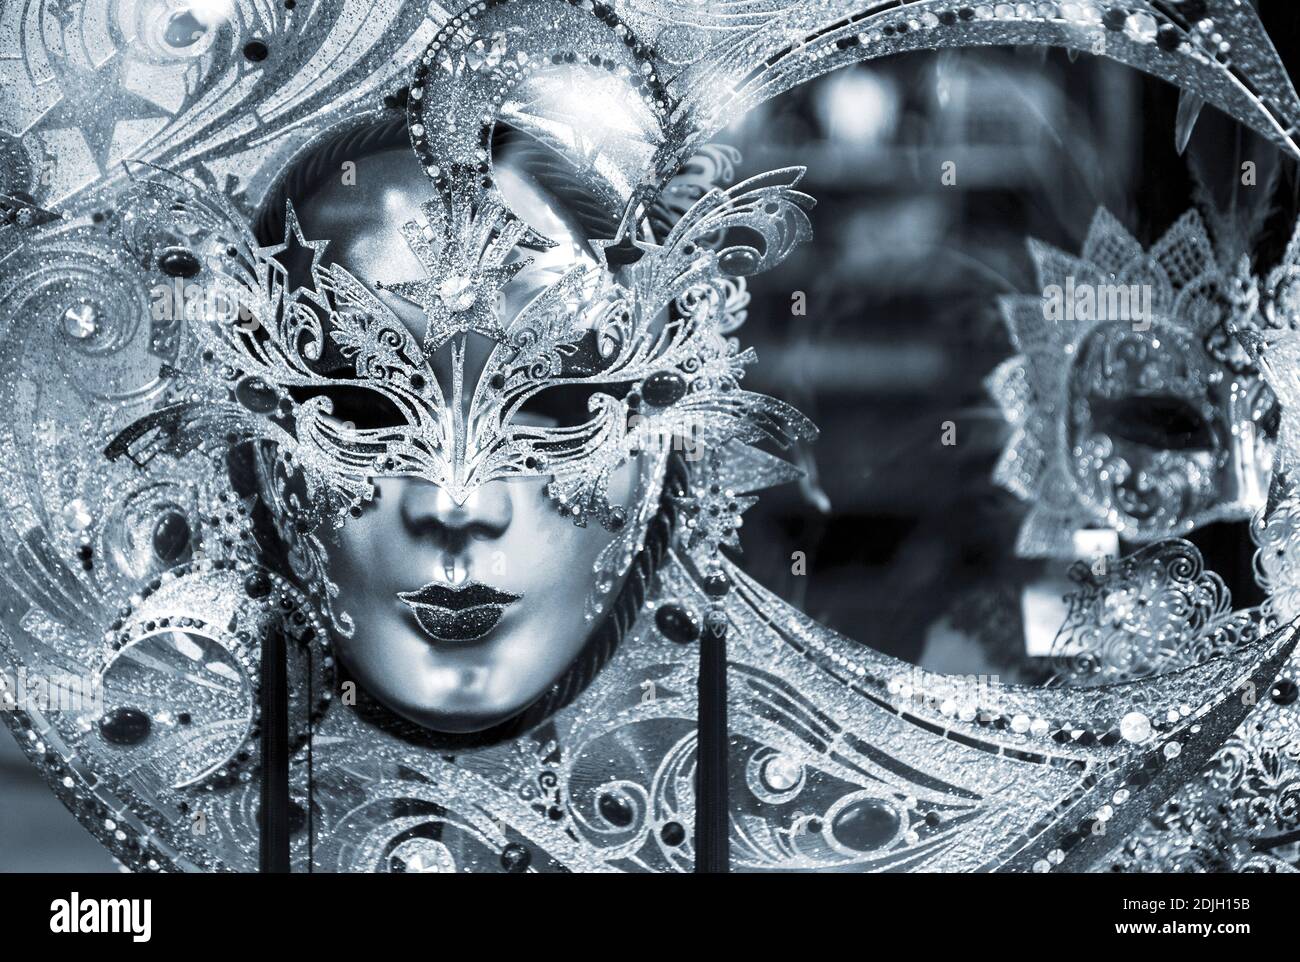 Noir et blanc photo de masque de carnaval traditionnel de Venise, Italie Banque D'Images